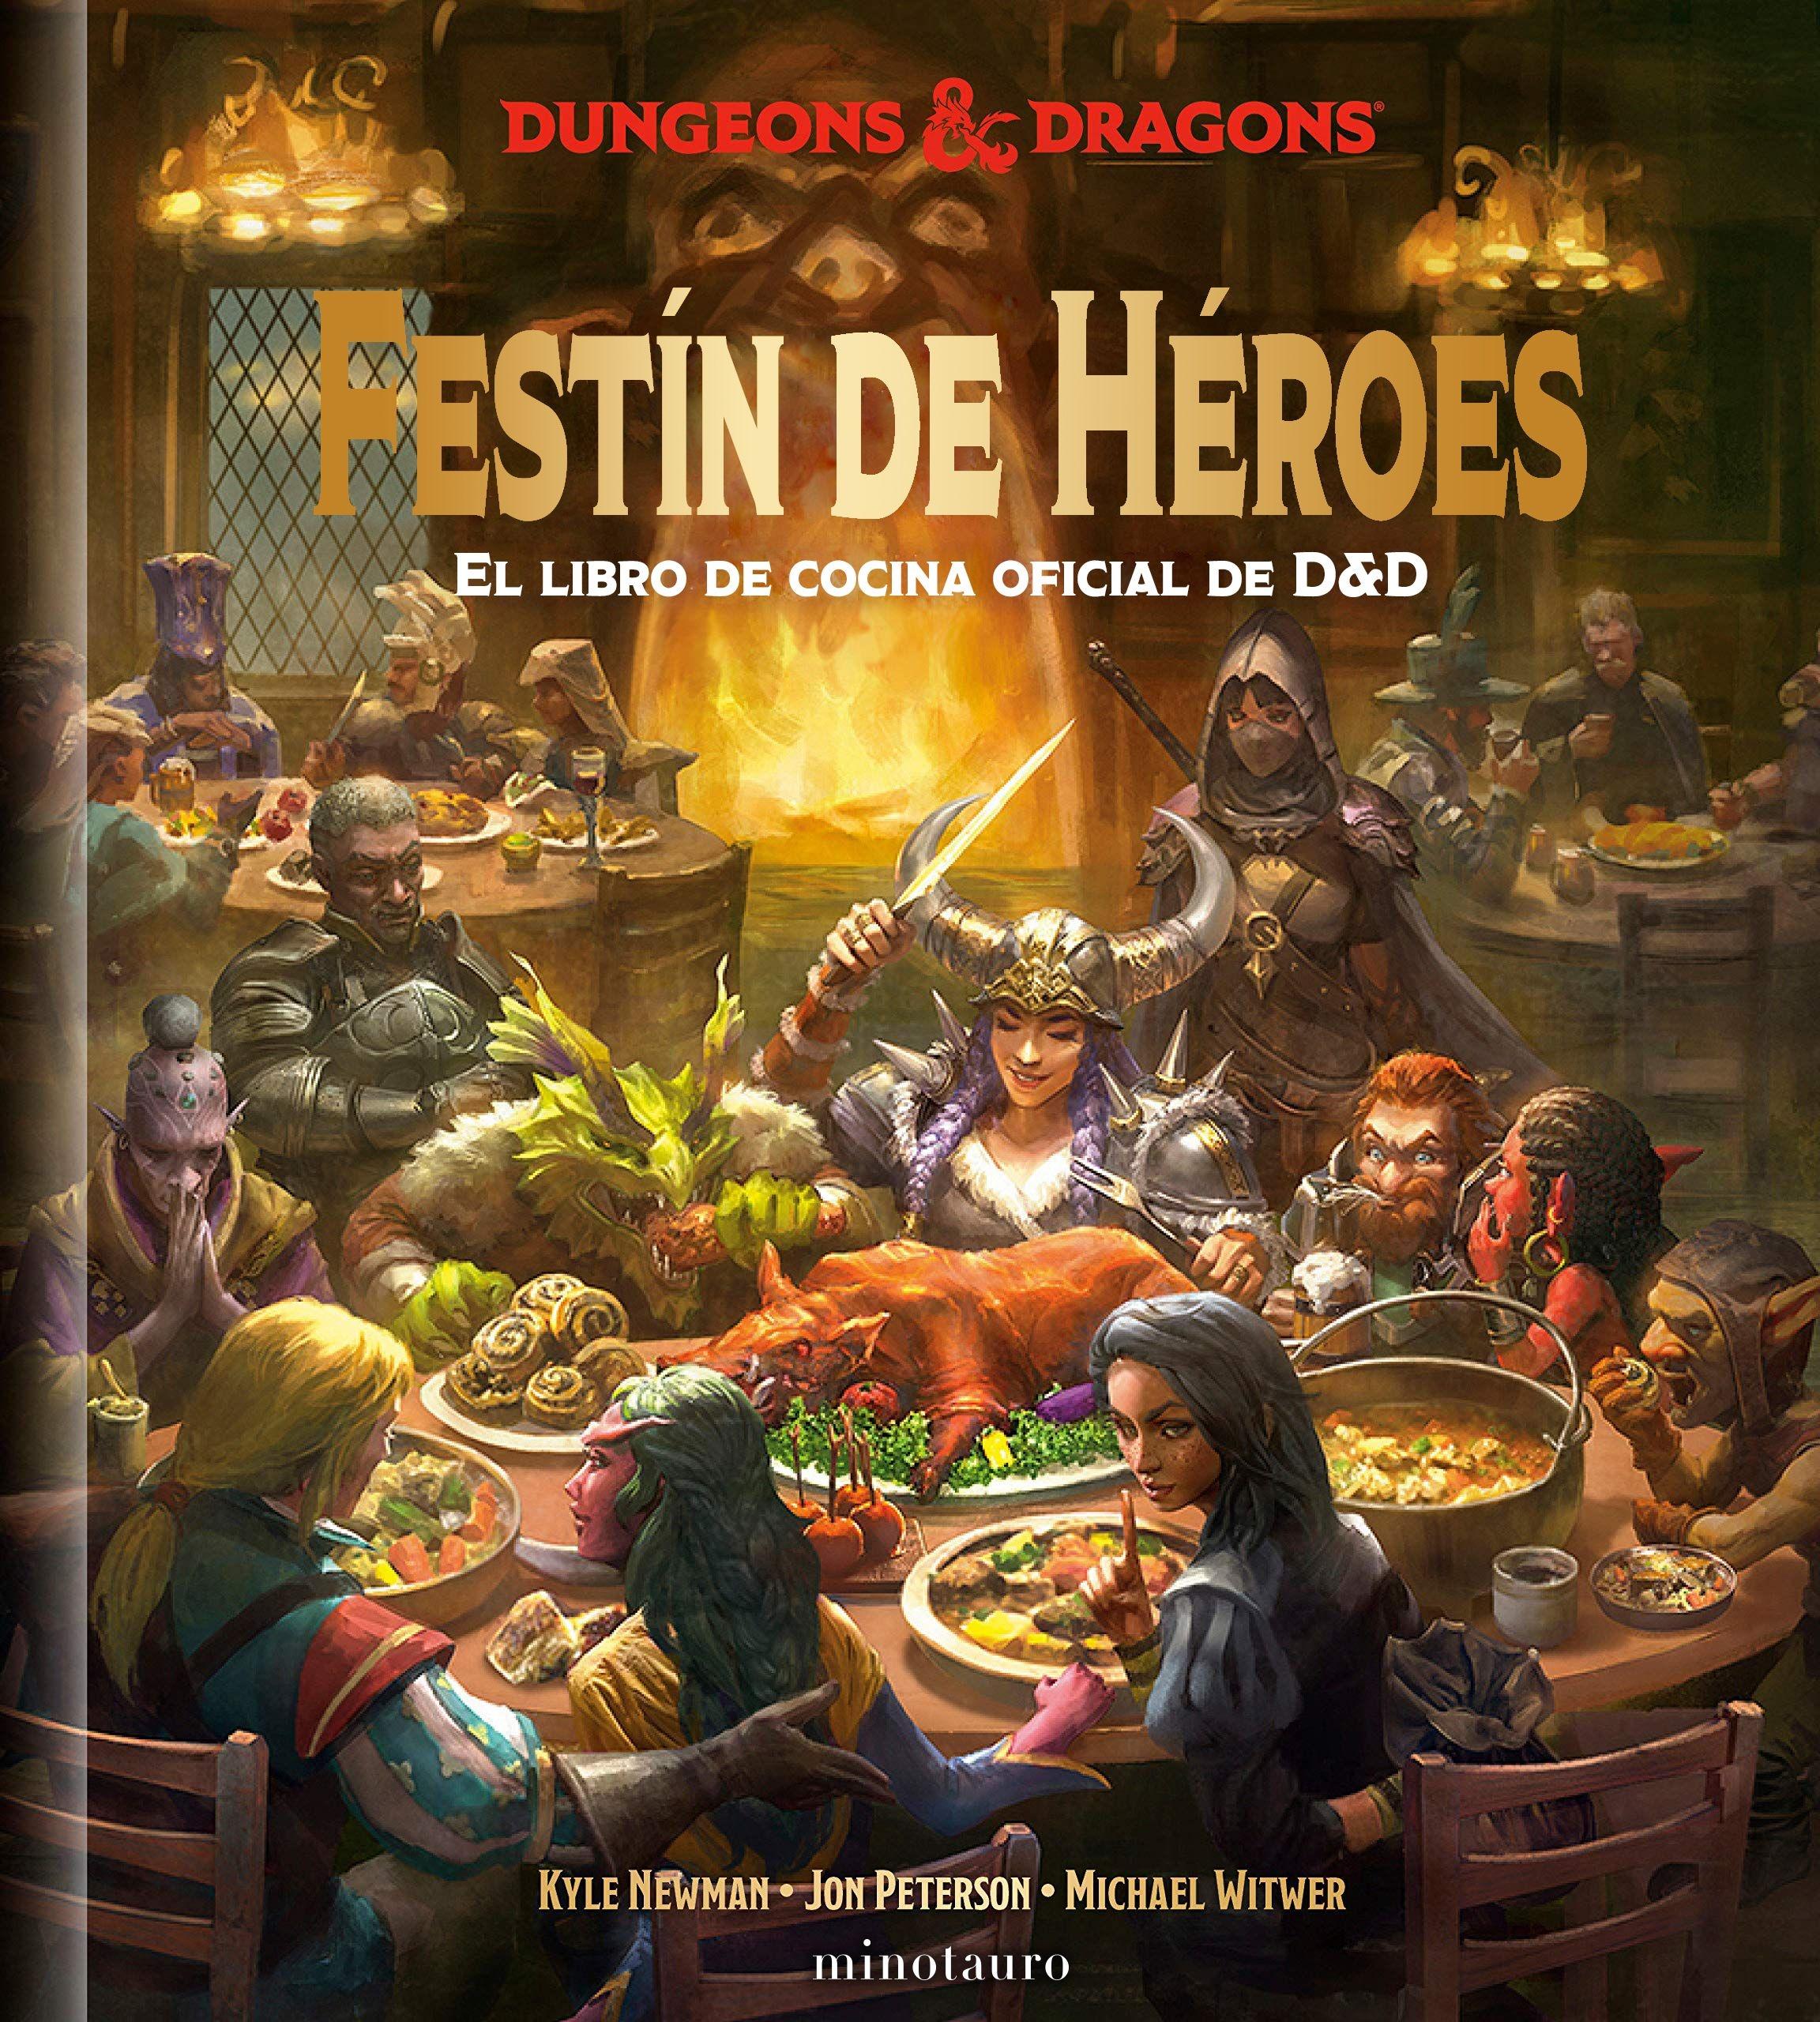 Festín de Héroes "El Libro de Cocina Oficial de D&D"